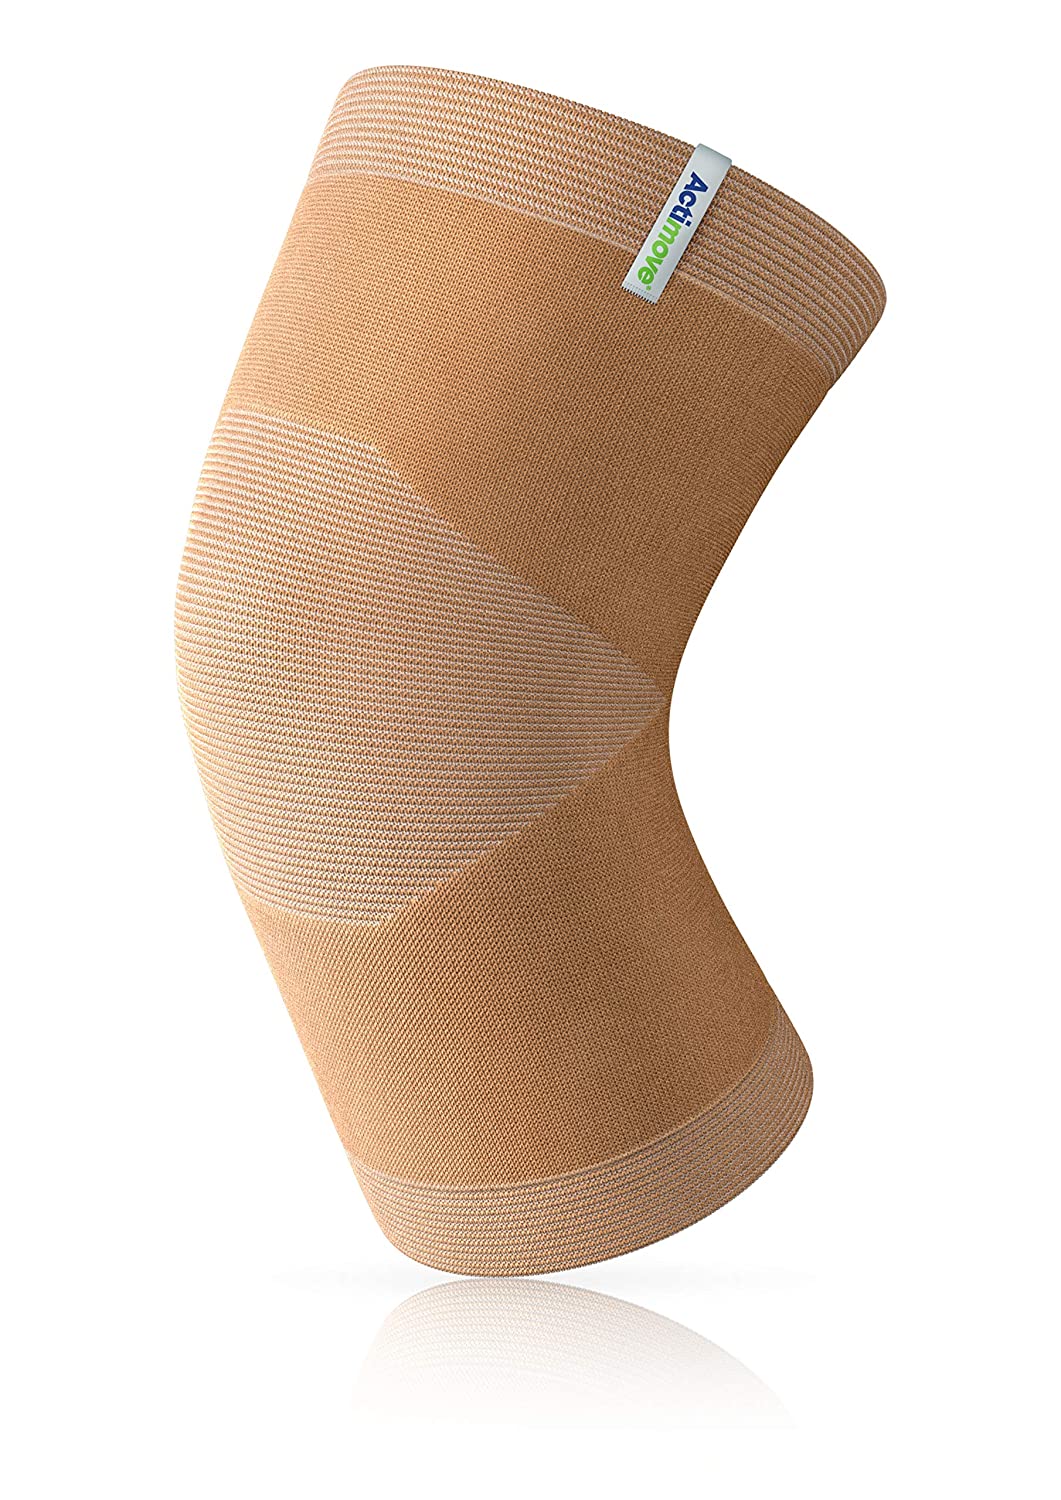 Actimove Arthritis Pain Relief Support, Knee, Sm, Beige - Ea/1